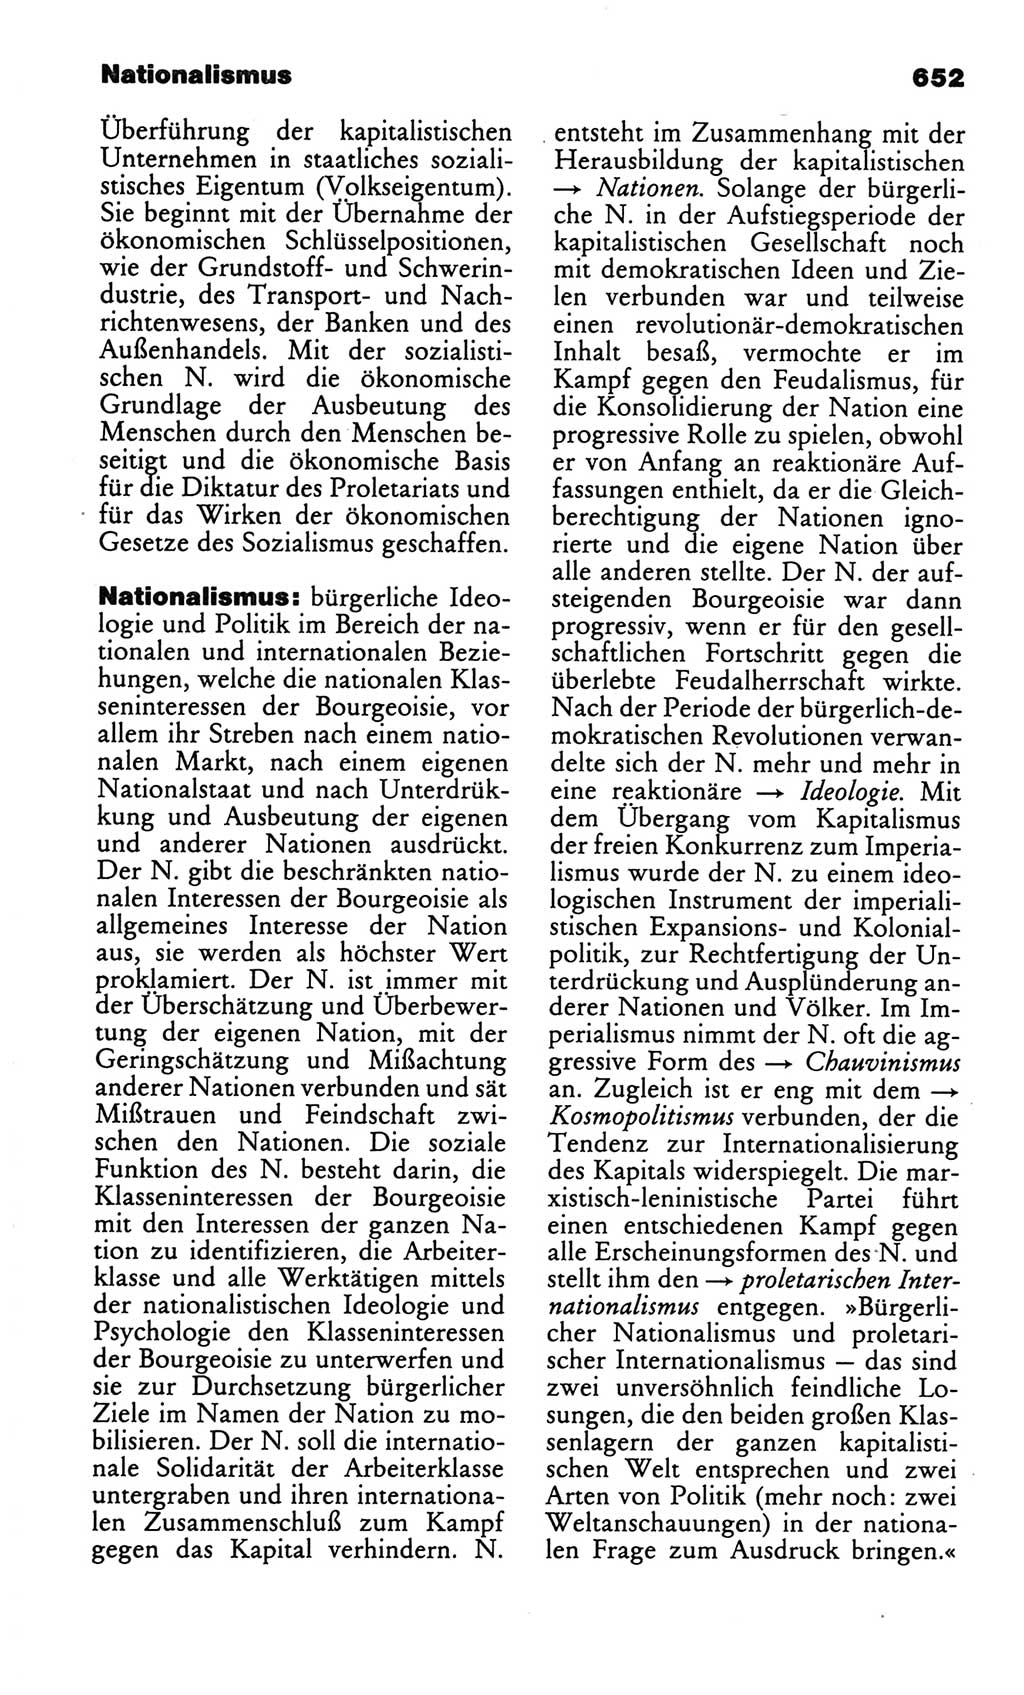 Kleines politisches Wörterbuch [Deutsche Demokratische Republik (DDR)] 1986, Seite 652 (Kl. pol. Wb. DDR 1986, S. 652)